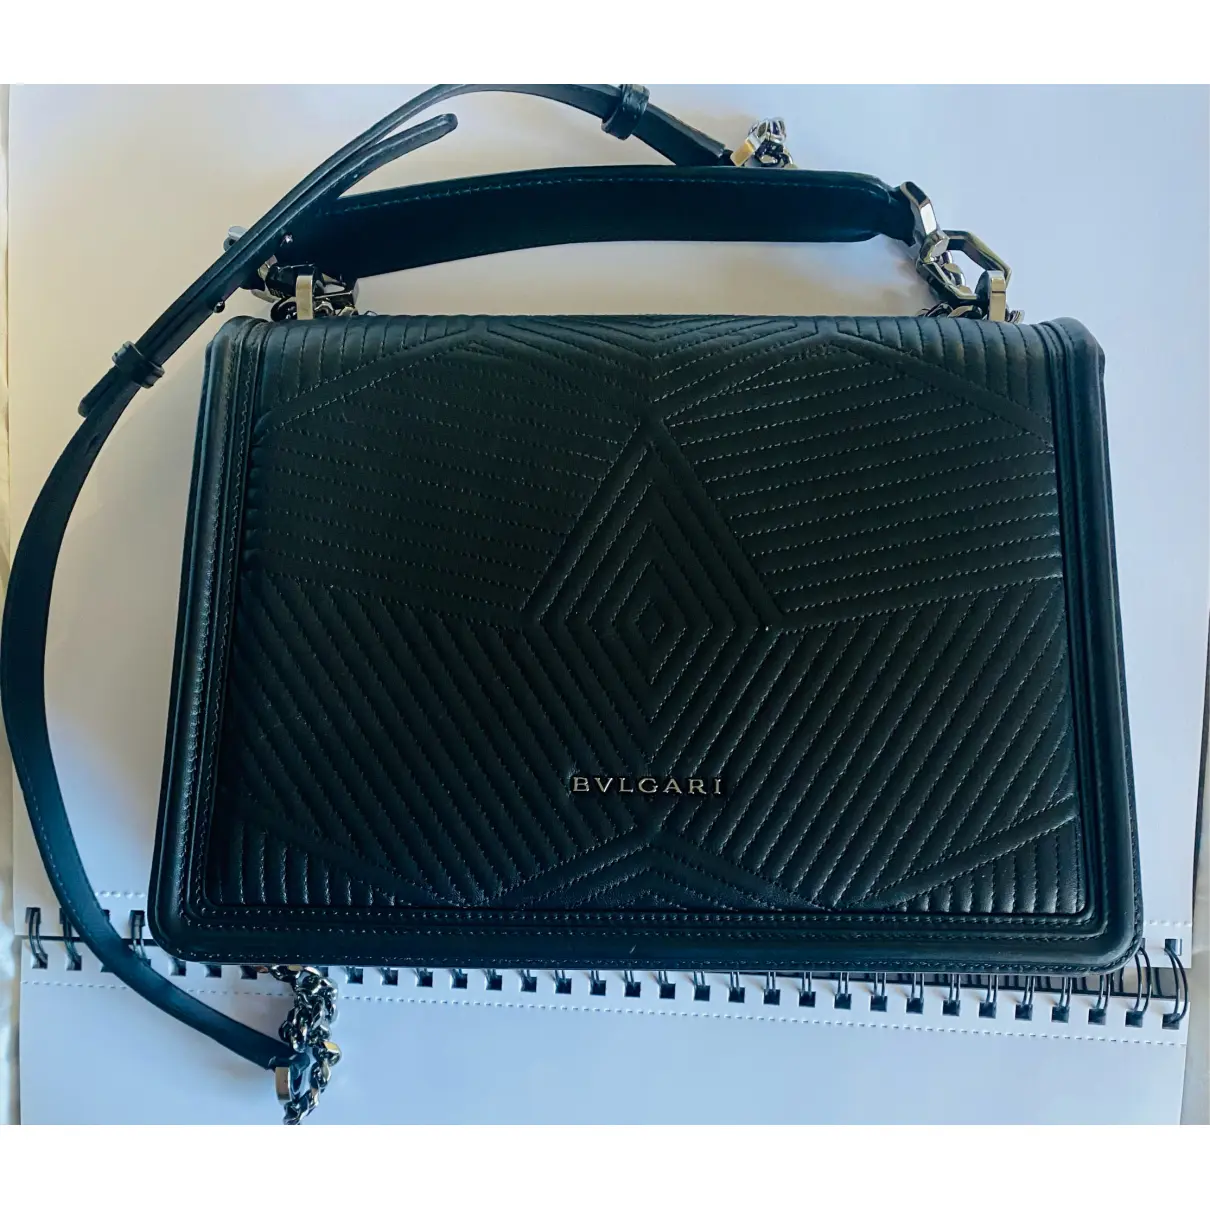 Buy Bvlgari Bulgari leather handbag online